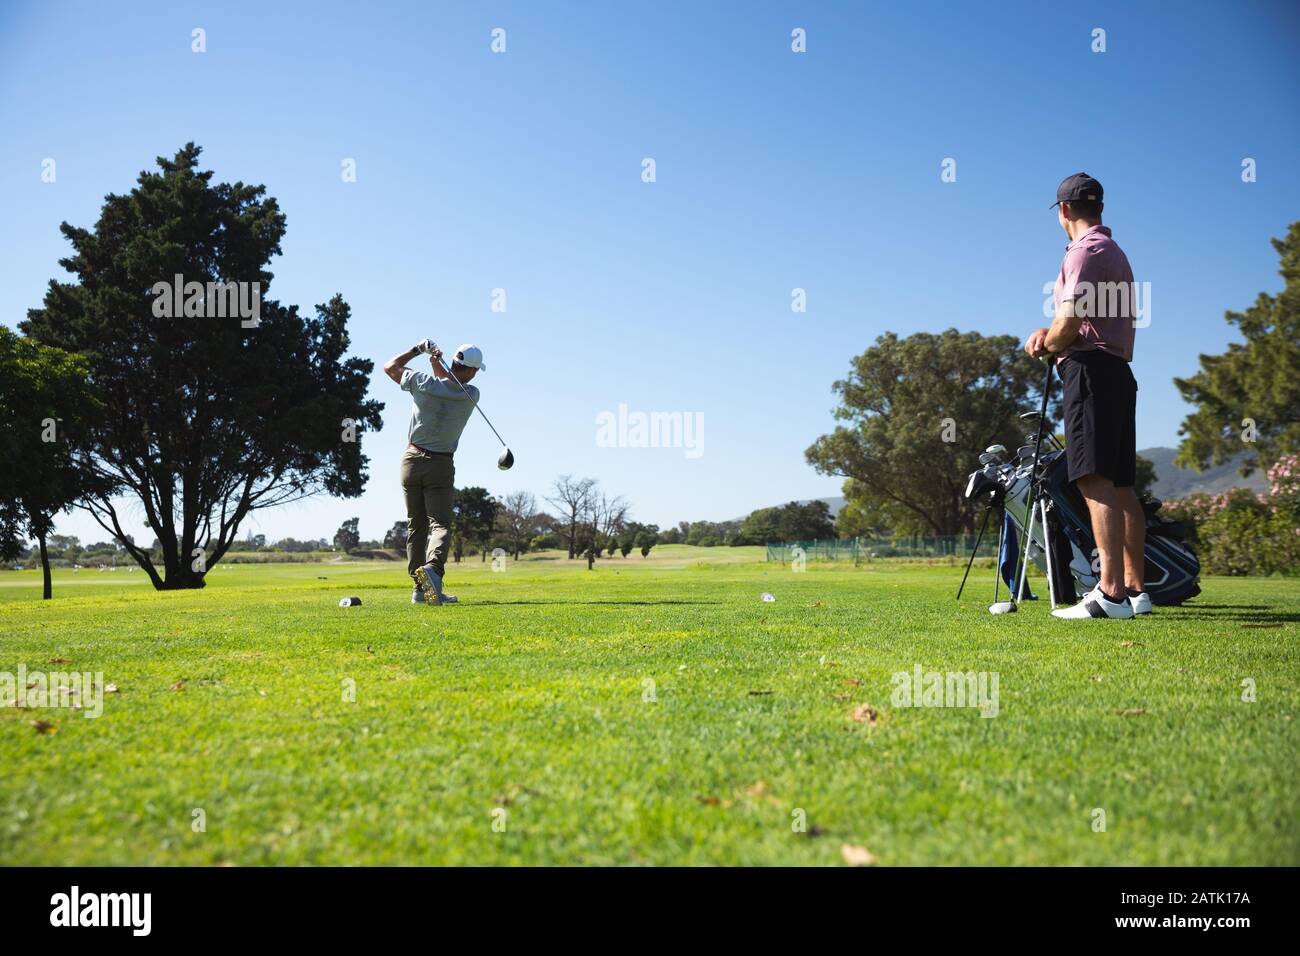 Los golfistas jugando al golf Foto de stock